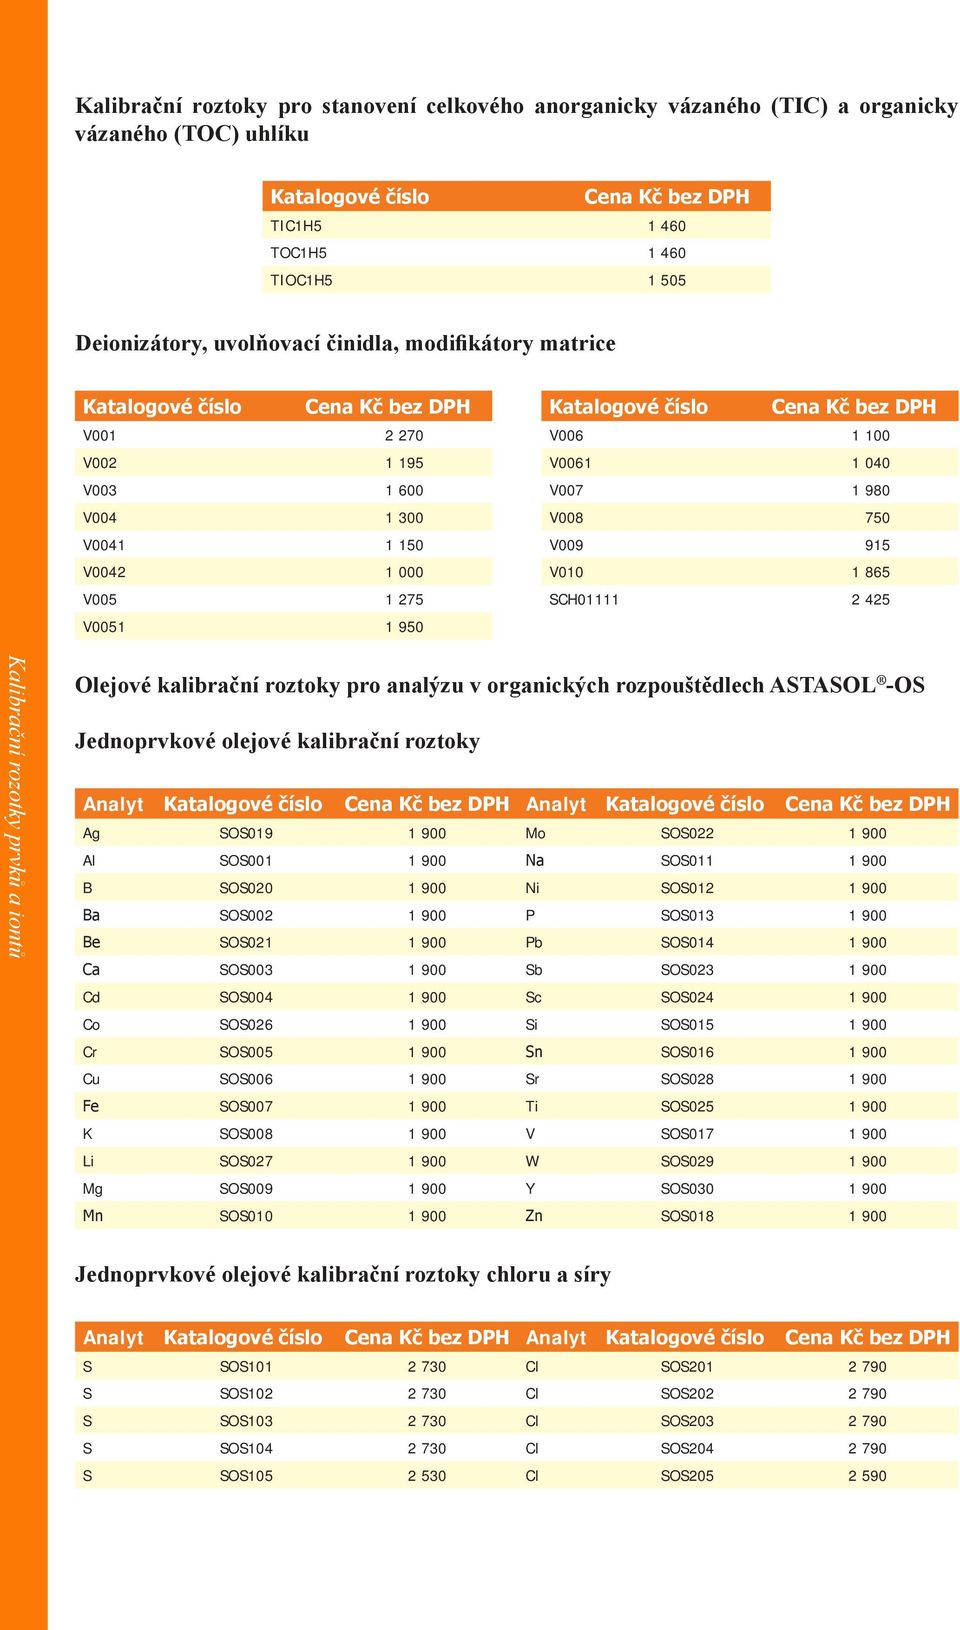 V0051 1 950 Kalibrační rozotky prvků a iontů Olejové kalibrační roztoky pro analýzu v organických rozpouštědlech ASTASOL -OS Jednoprvkové olejové kalibrační roztoky Analyt Katalogové číslo Cena Kč